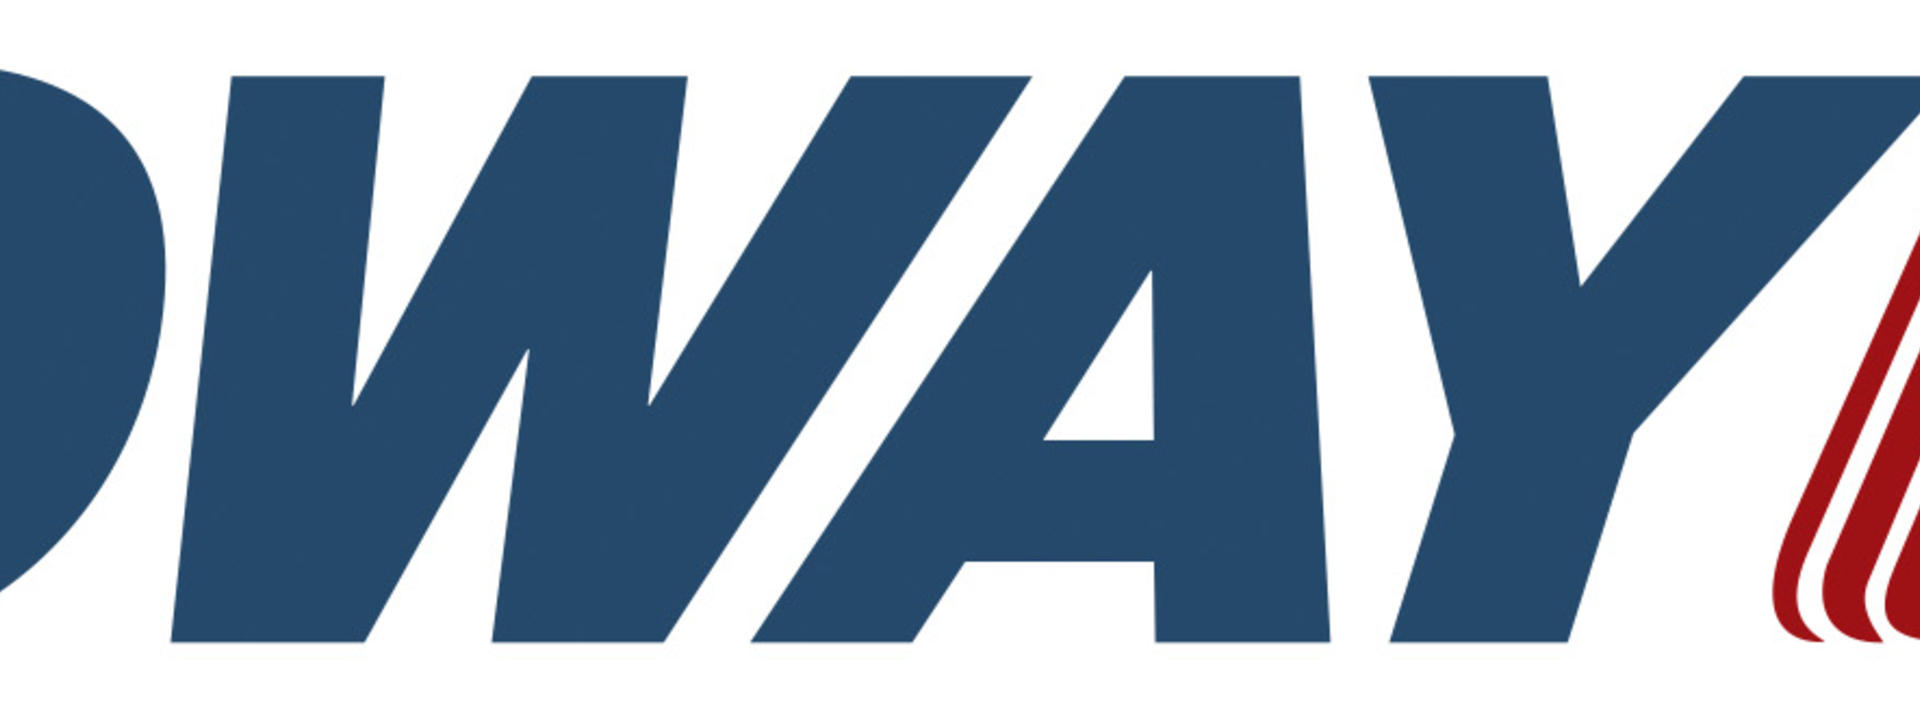 ogway-logo.jpg